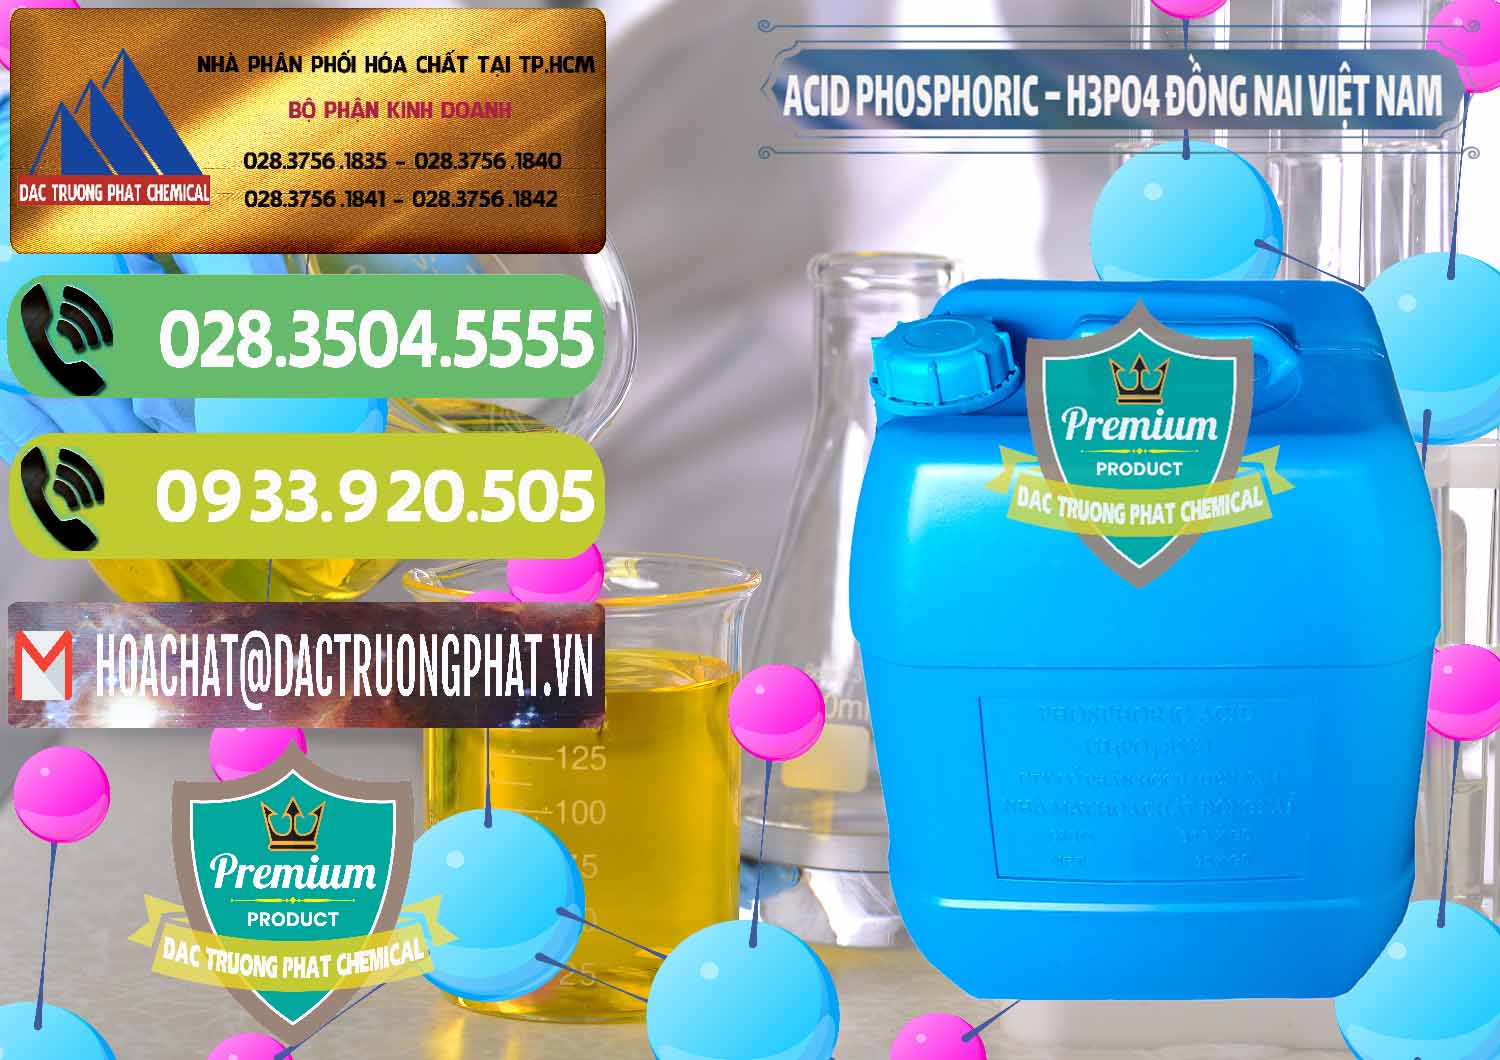 Cty chuyên phân phối - kinh doanh Acid Phosphoric – Axit Phosphoric 85% Đồng Nai Việt Nam - 0183 - Công ty chuyên cung ứng & phân phối hóa chất tại TP.HCM - hoachatmientay.vn